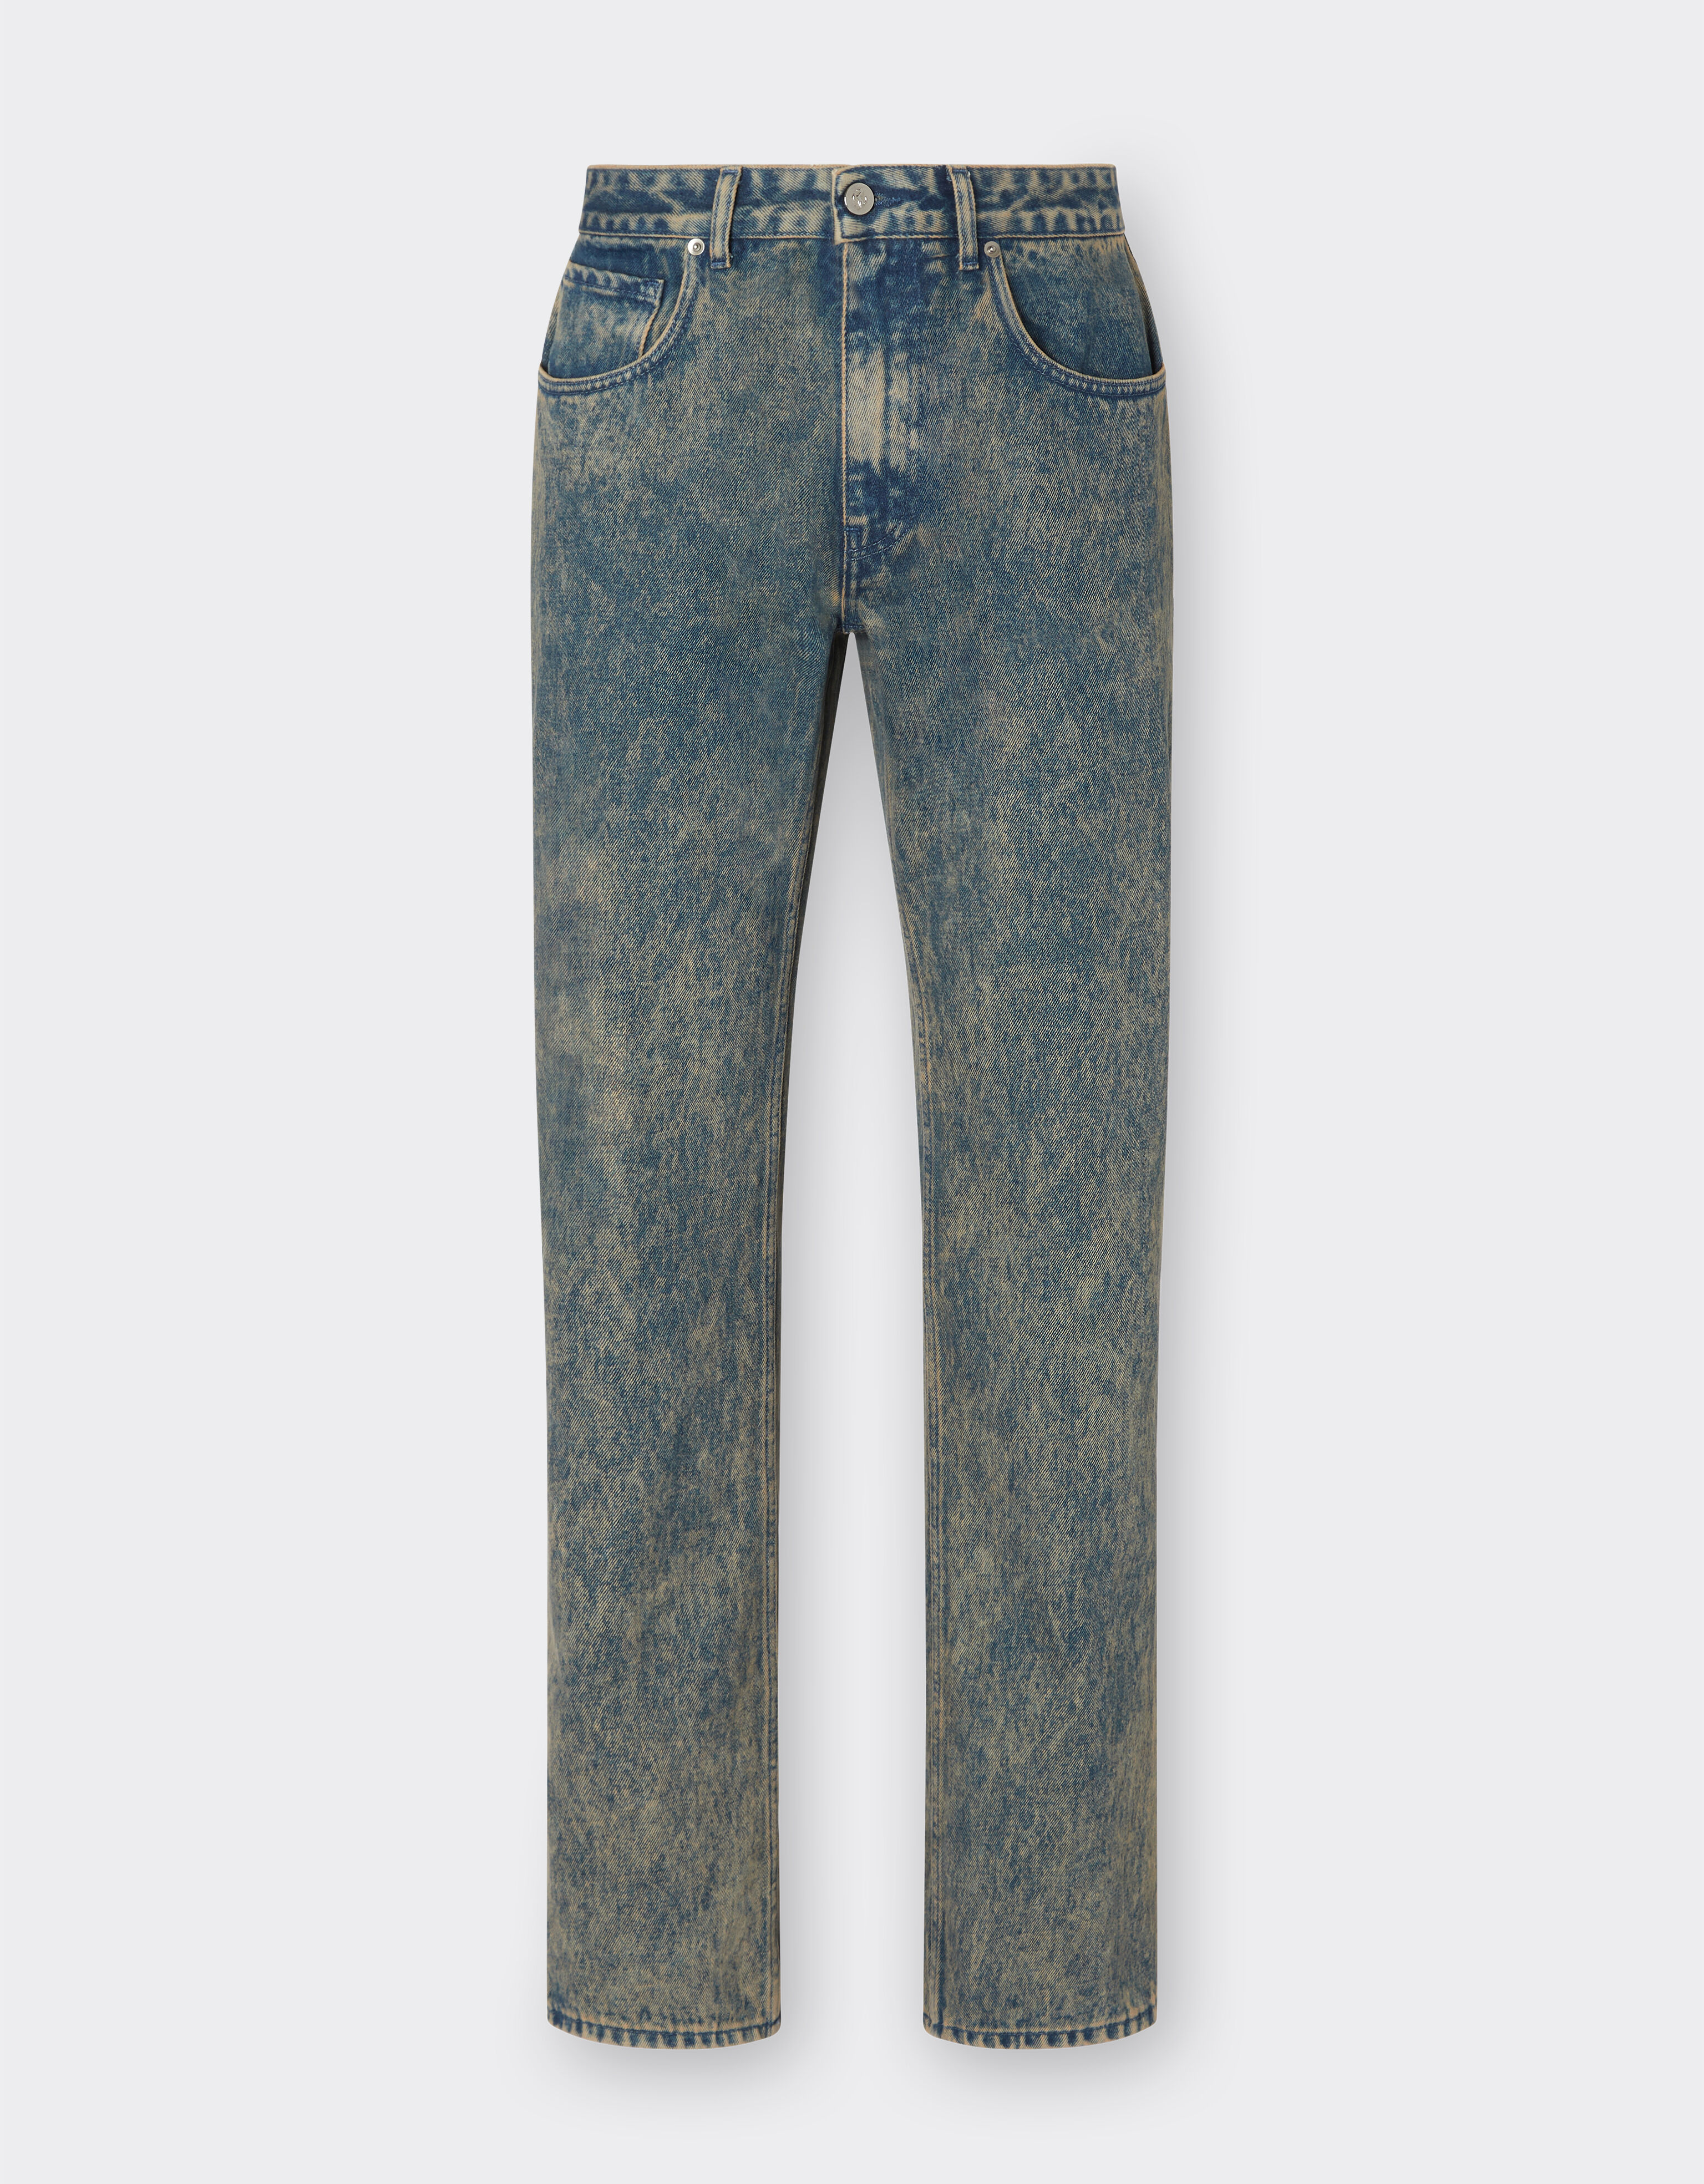 Ferrari Pantalone jeans con tintura effetto marmo Dark Grey 21246f